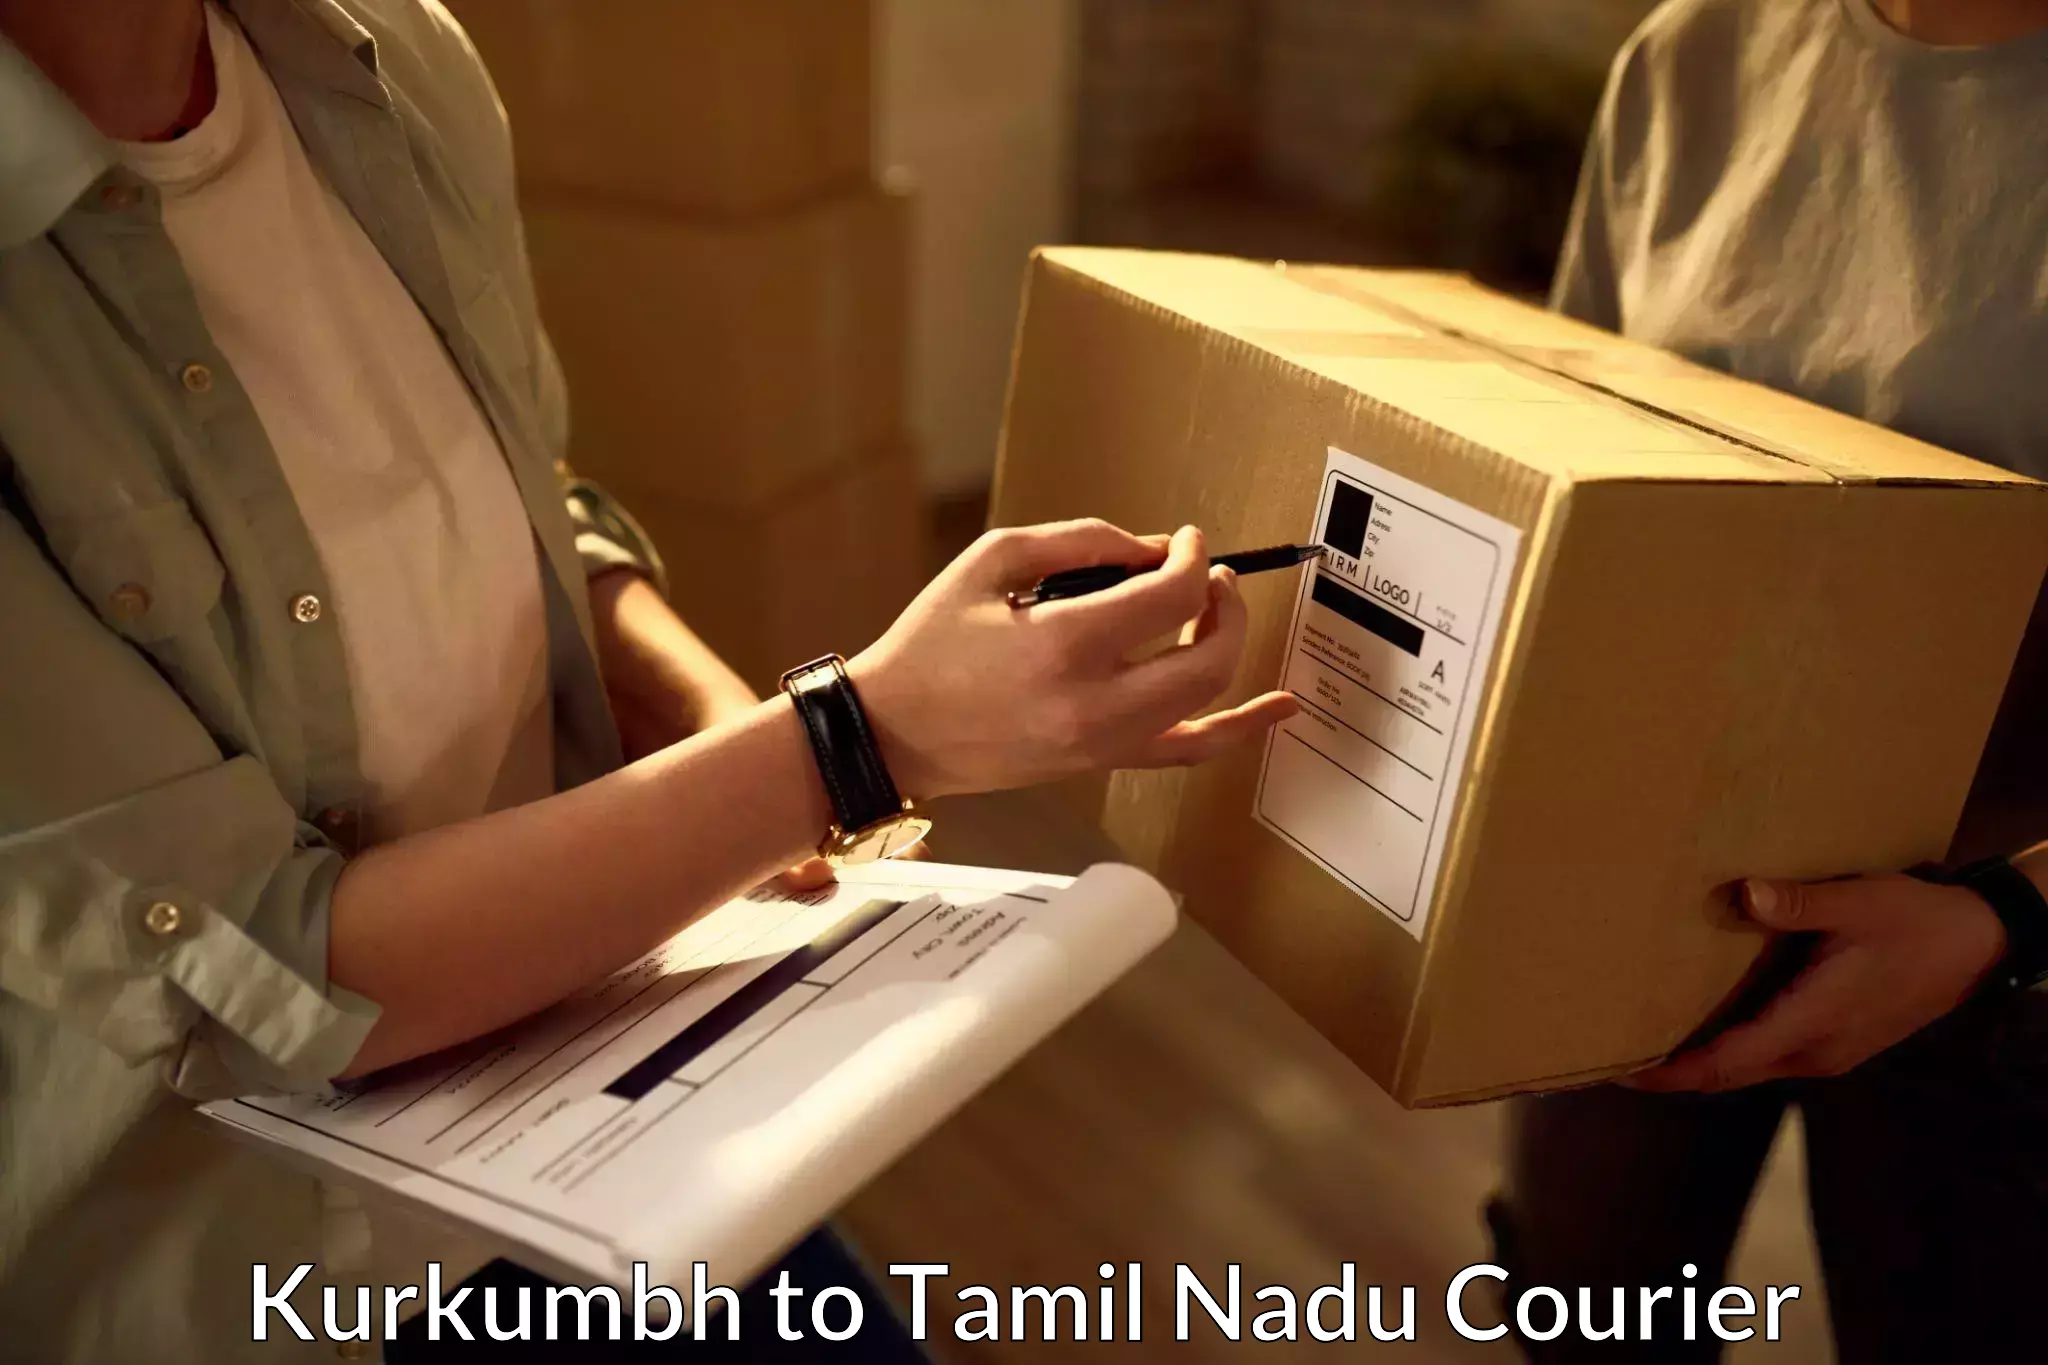 24-hour courier service in Kurkumbh to Kodumudi